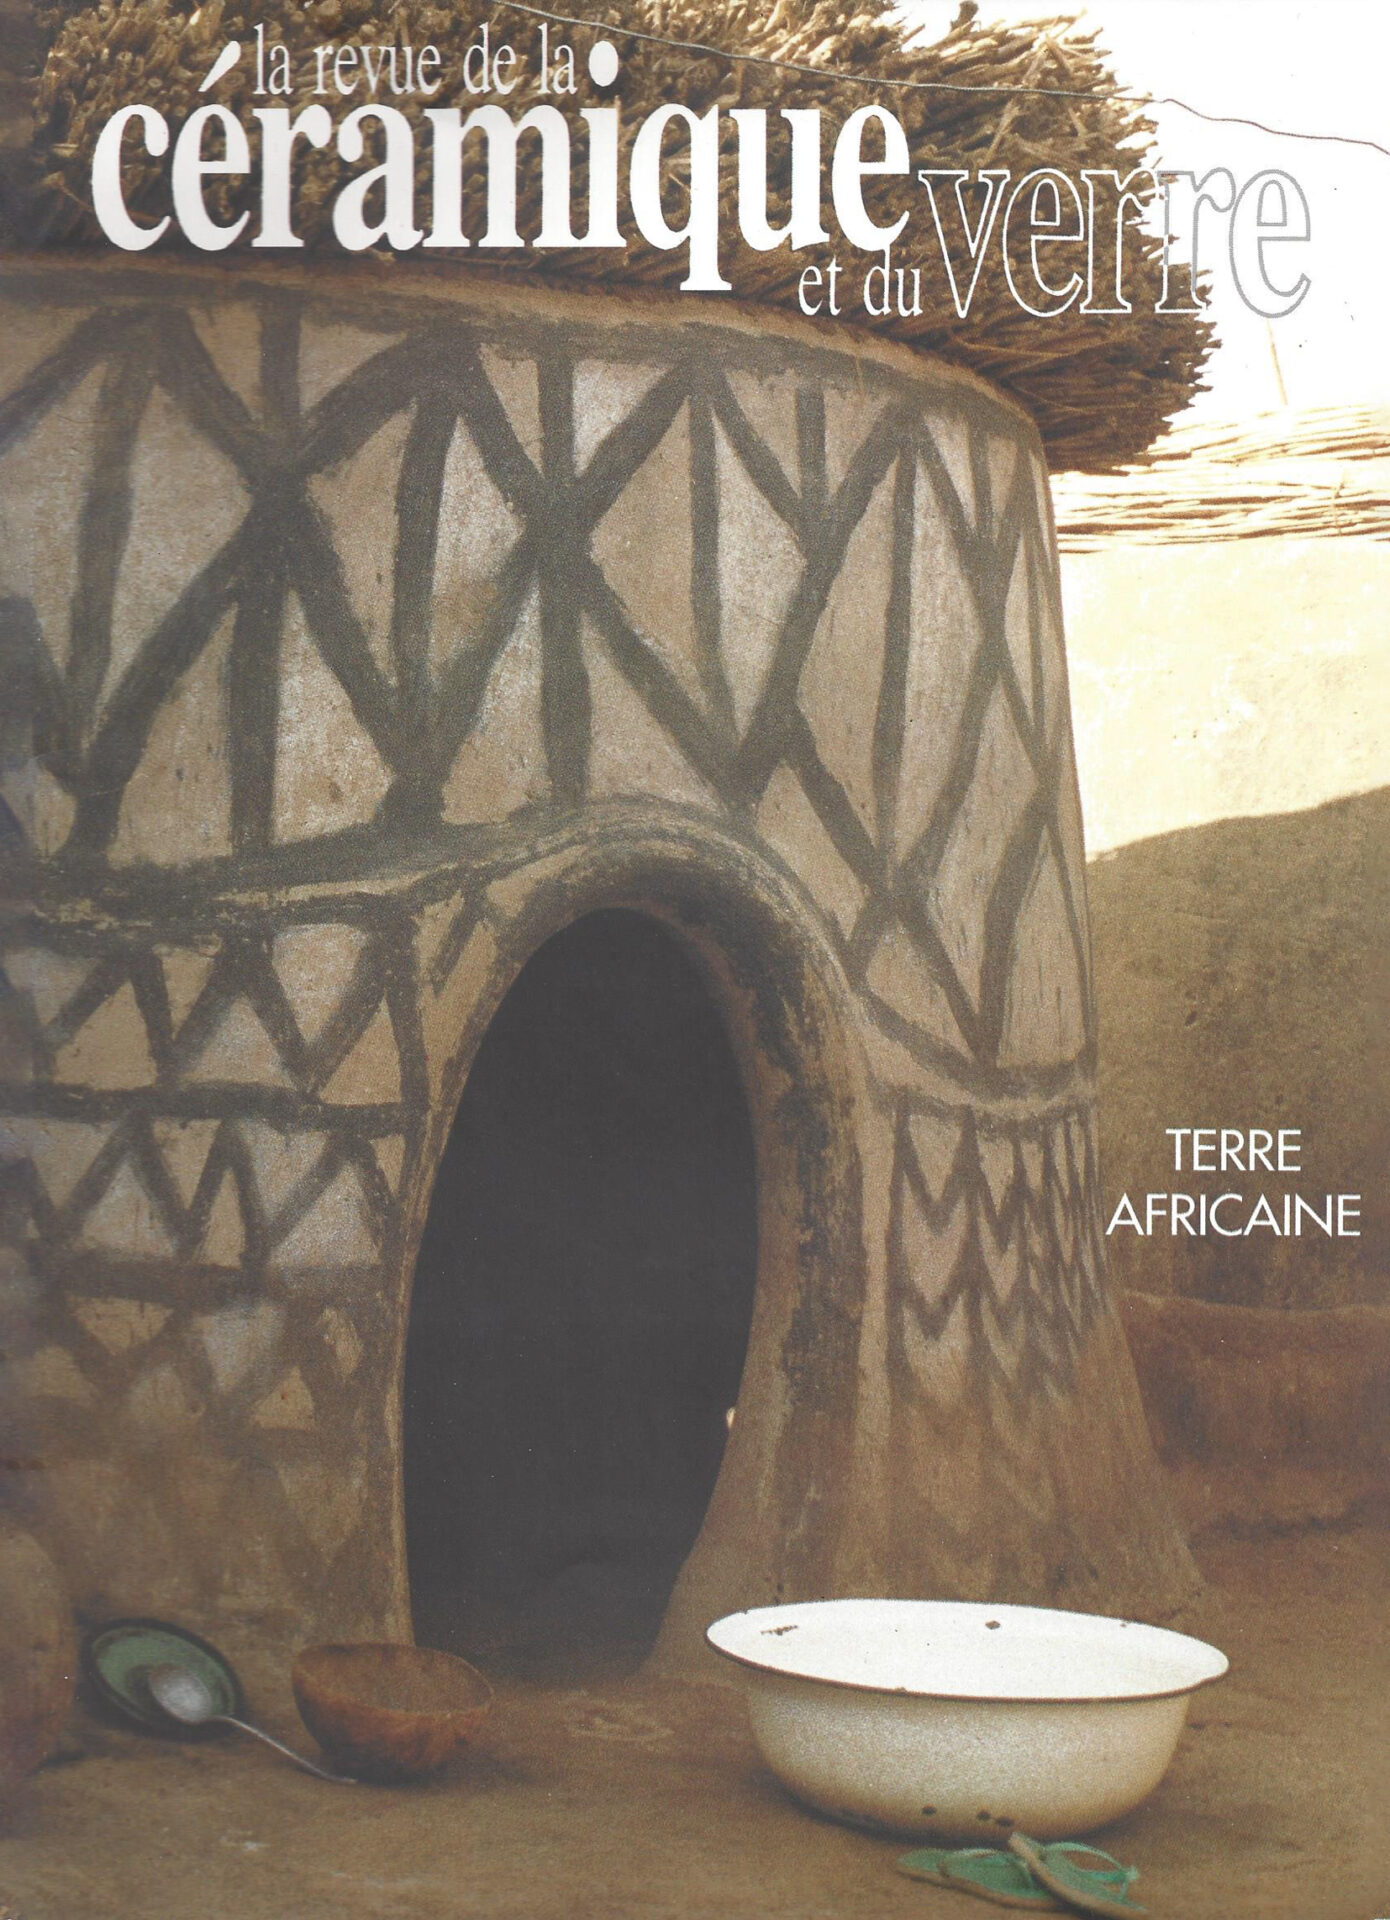 La revue de la céramique et du verre - n° 79 - 1994, construction d'un four Anagama, par F. Dufayard_1_couverture